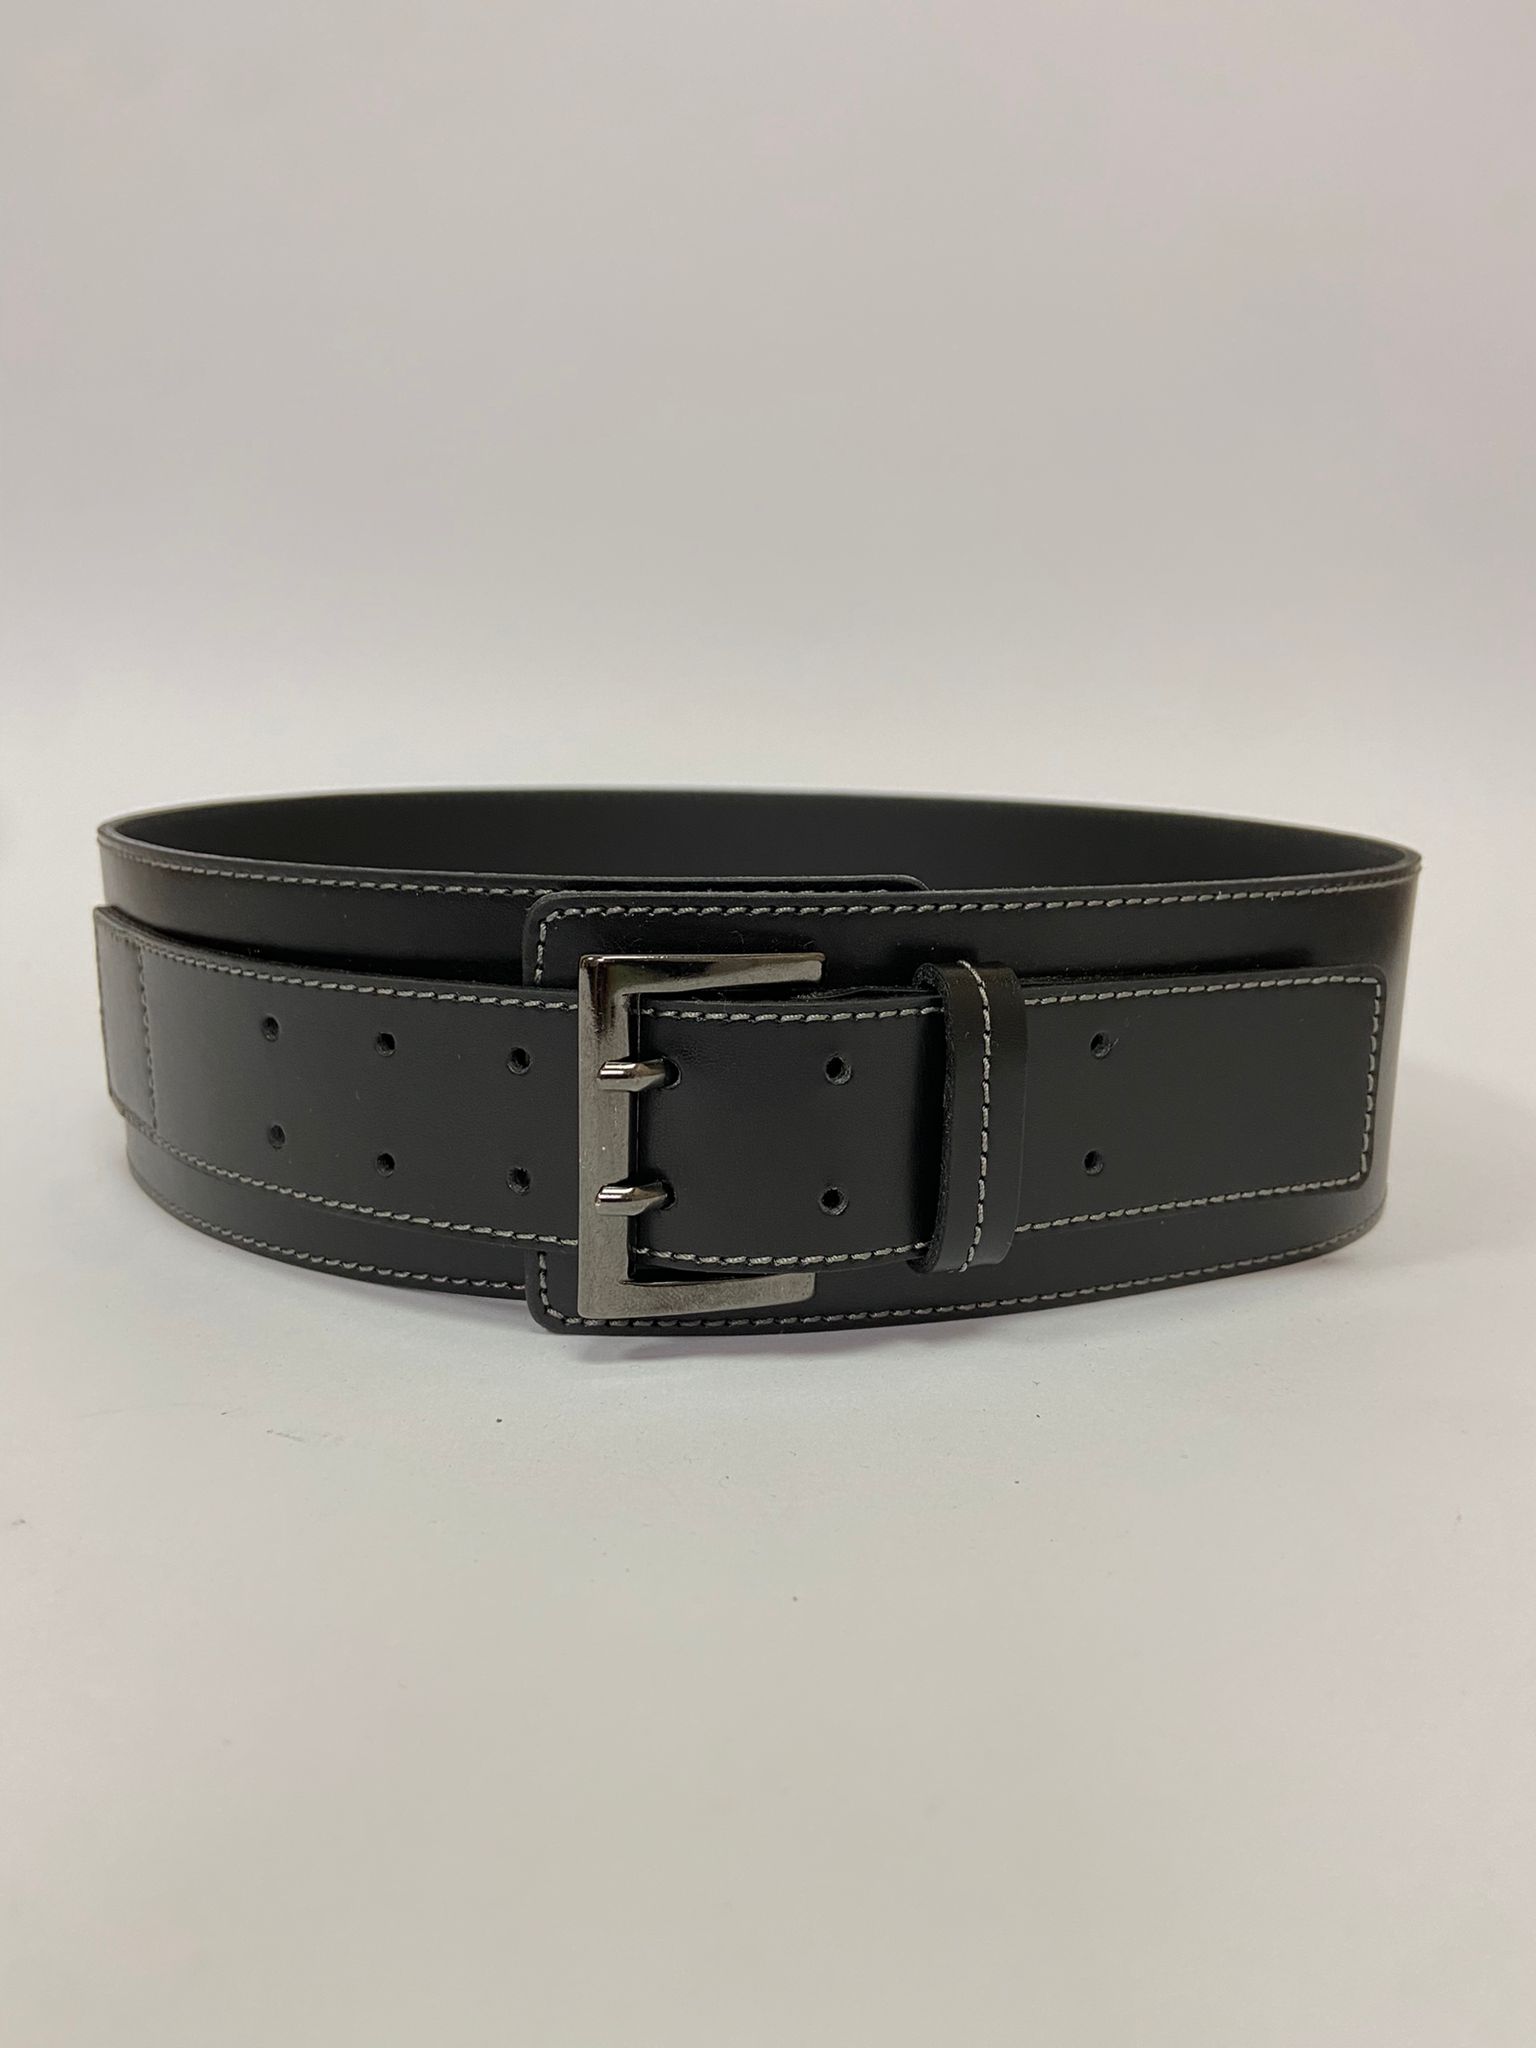 Leather belt image 1